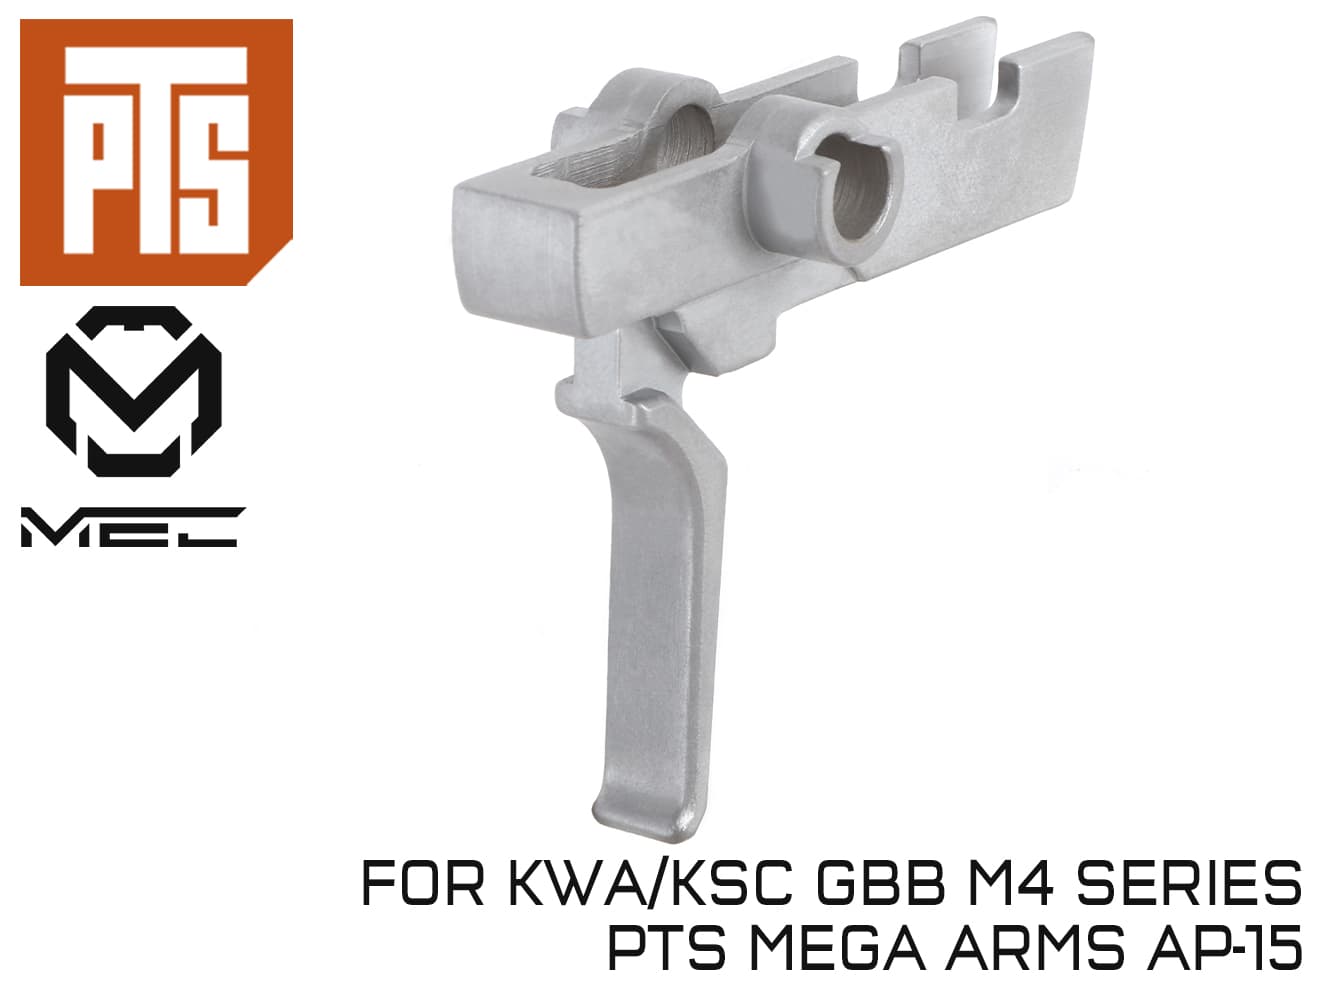 PTS MEC PROトリガー KSC/KWA GBB M4◆ガスブロ ピーティーエス Mega Arms AR-15対応 ガク引きの抑制 鋳鉄ベース パーカライジング 耐食性向上